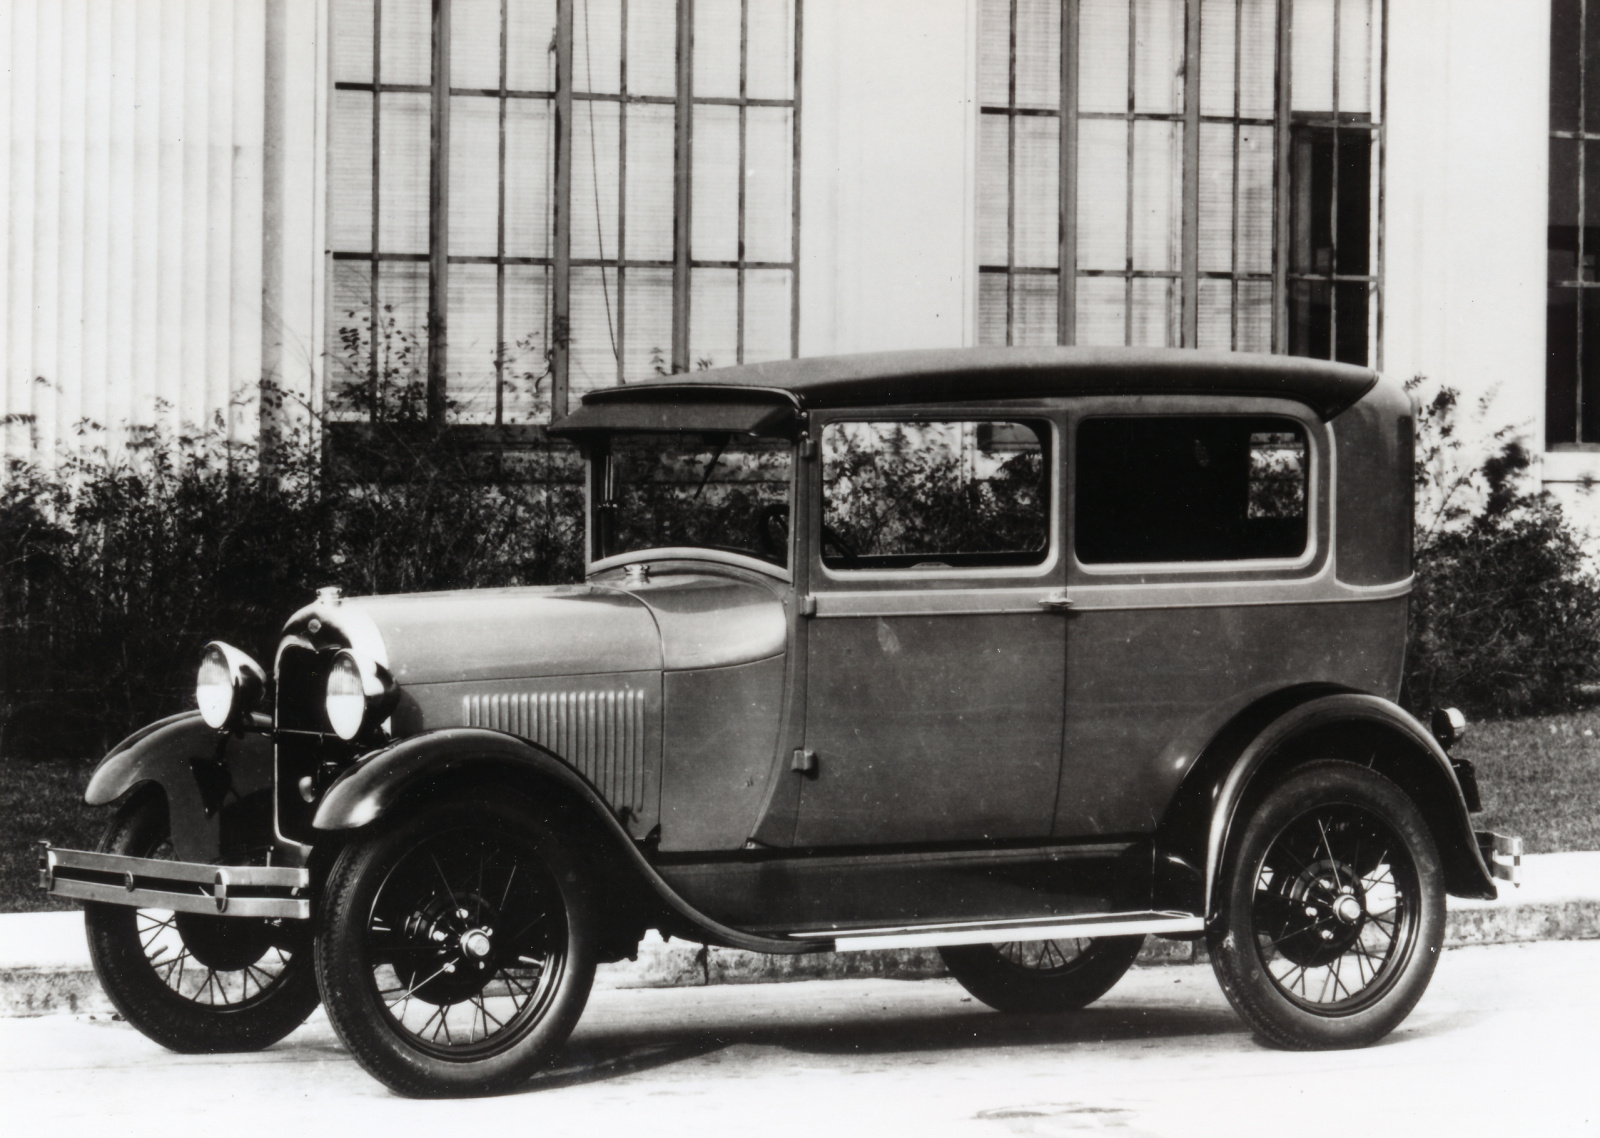 Ford Modell A/AF (1928) - Foto eines Ford PKW-Modells